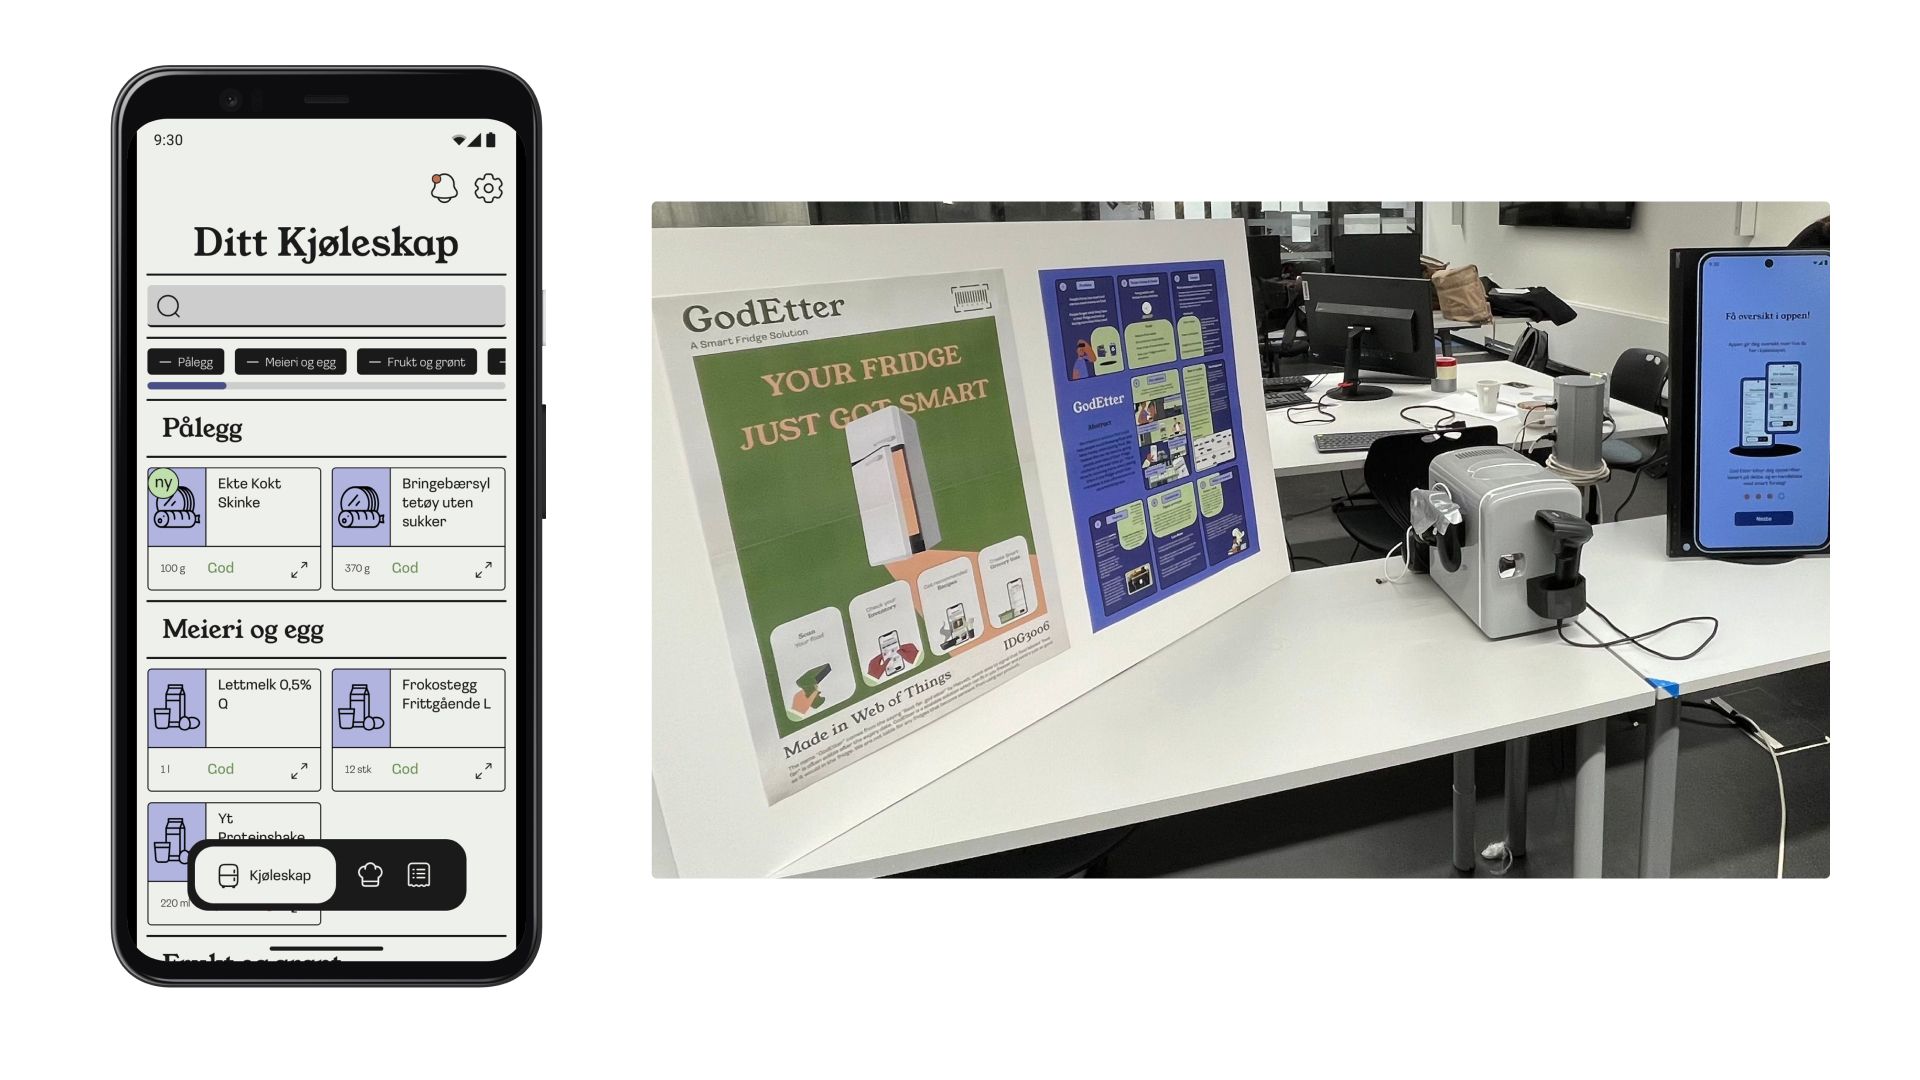 Bilde av en mobil som viser GodEtter applikasjonen, sammen med et bilde av den fysiske løsningen.